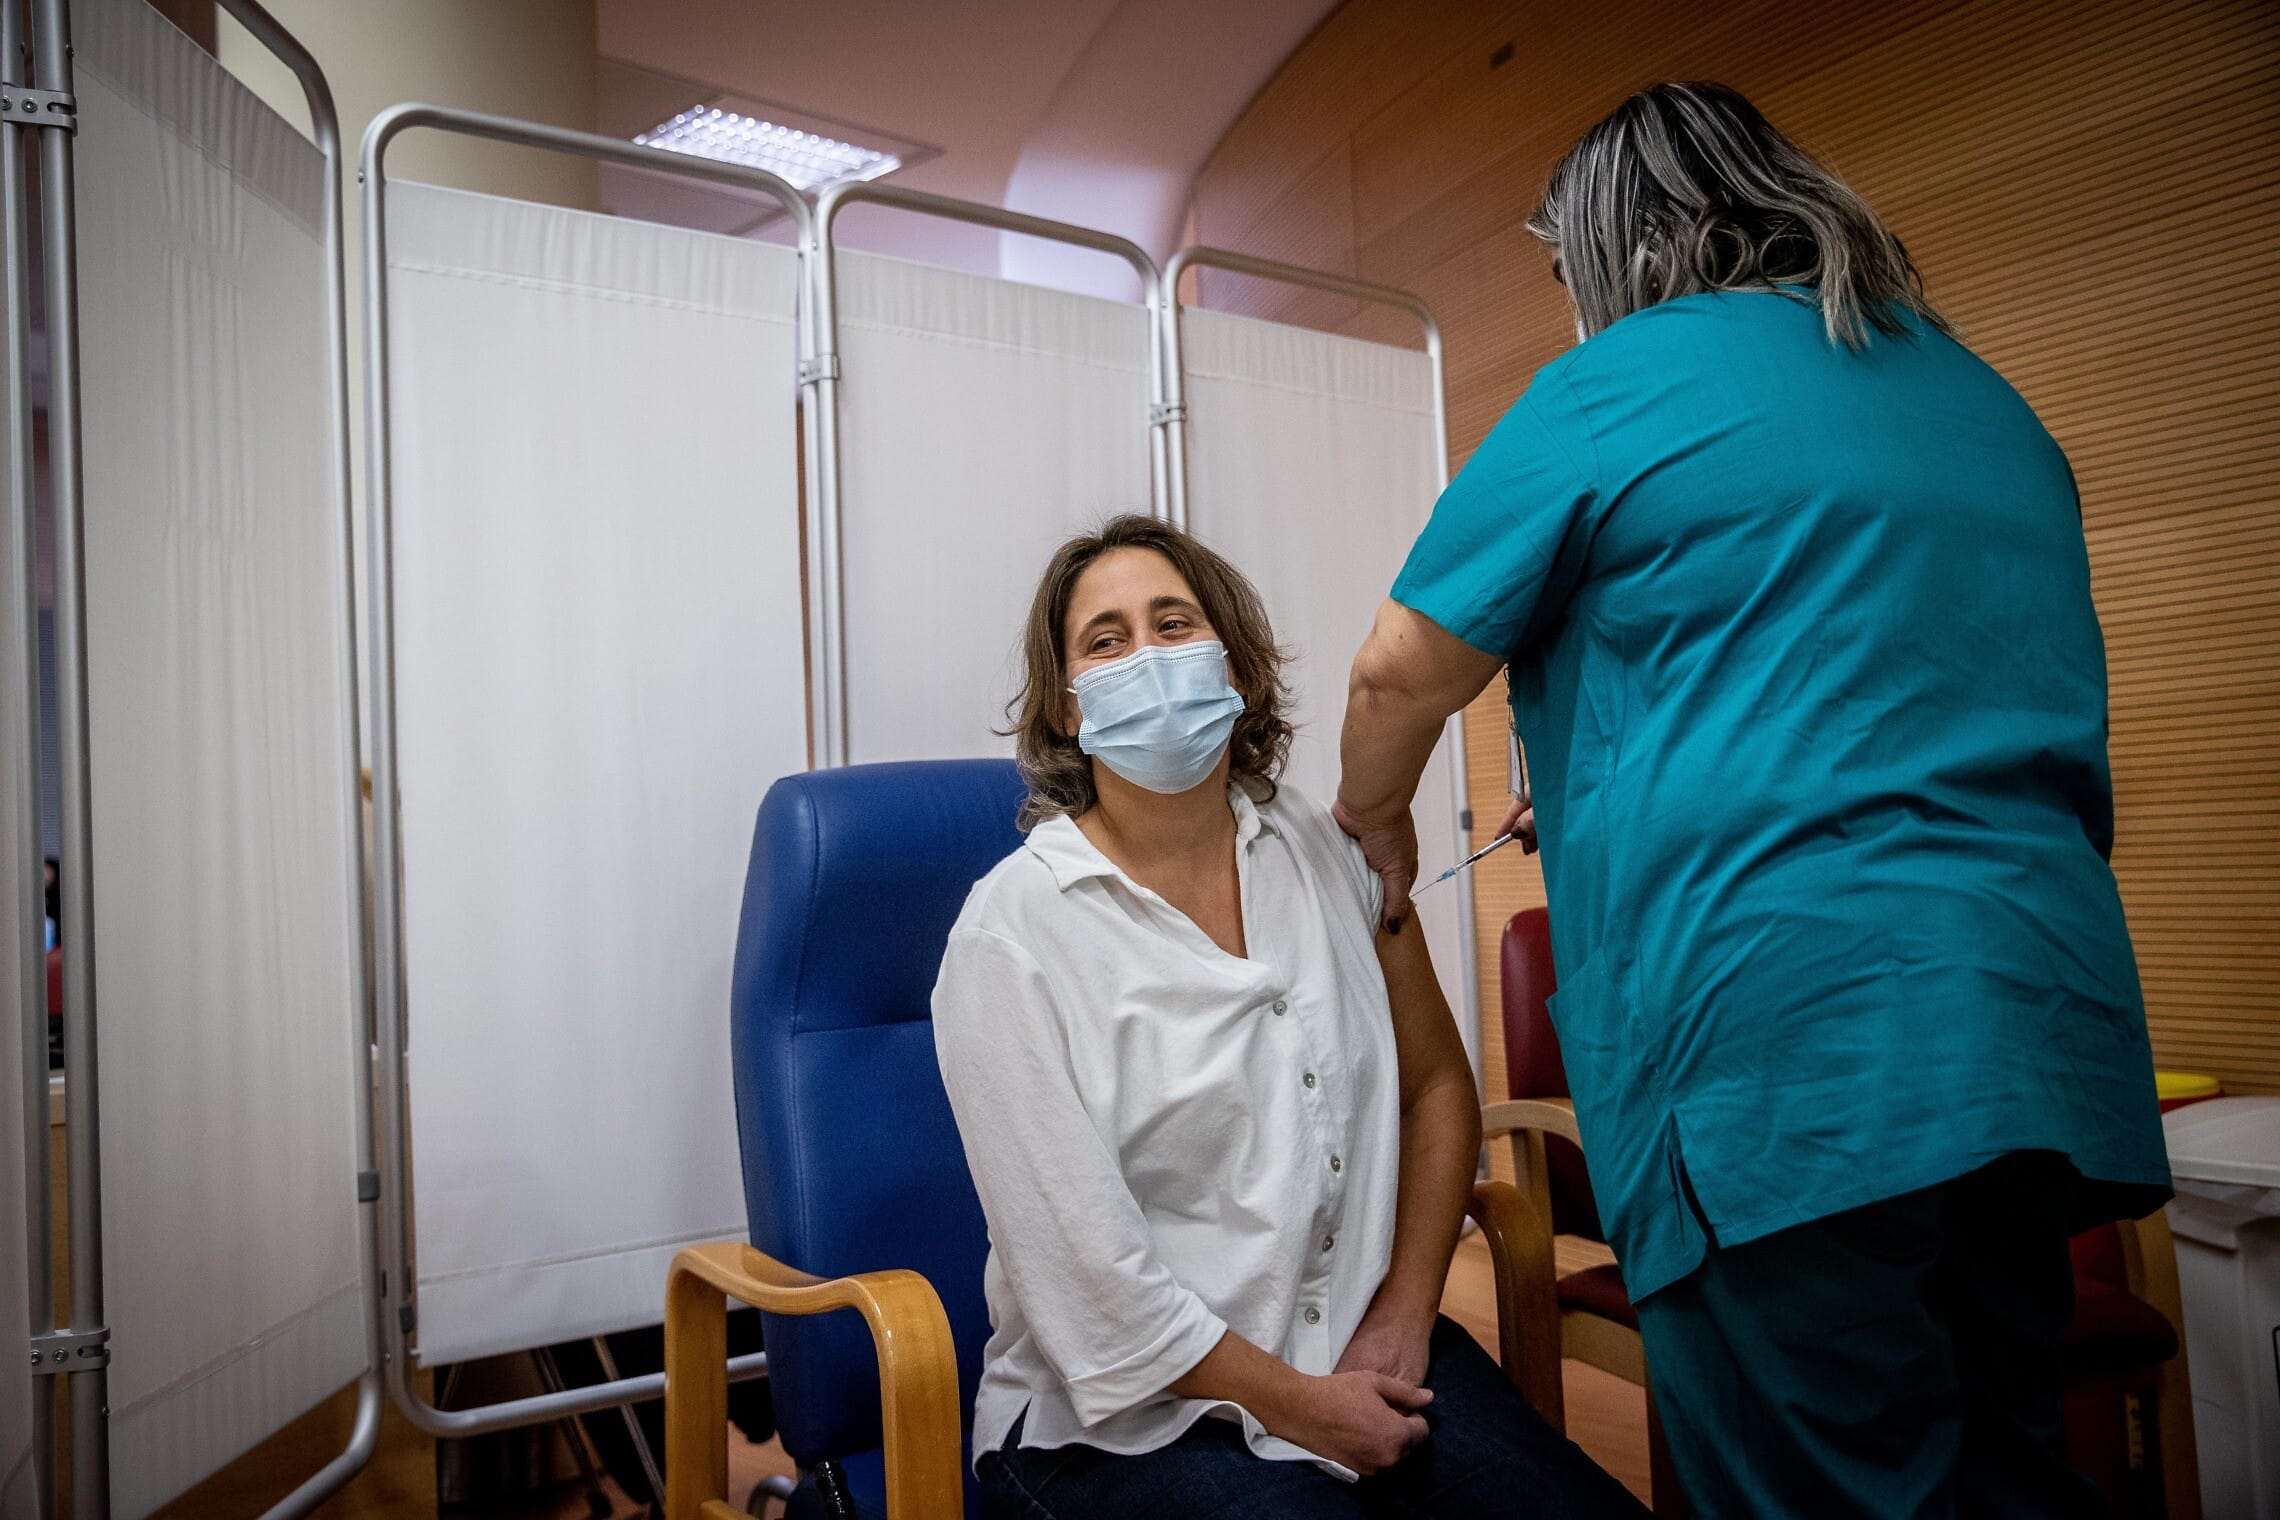 מטופלת מקבלת את המנה השנייה של החיסון נגד קורונה במרכז הרפואי הדסה בירושלים, 11 בינואר 2021 (צילום: יונתן זינדל, פלאש 90)